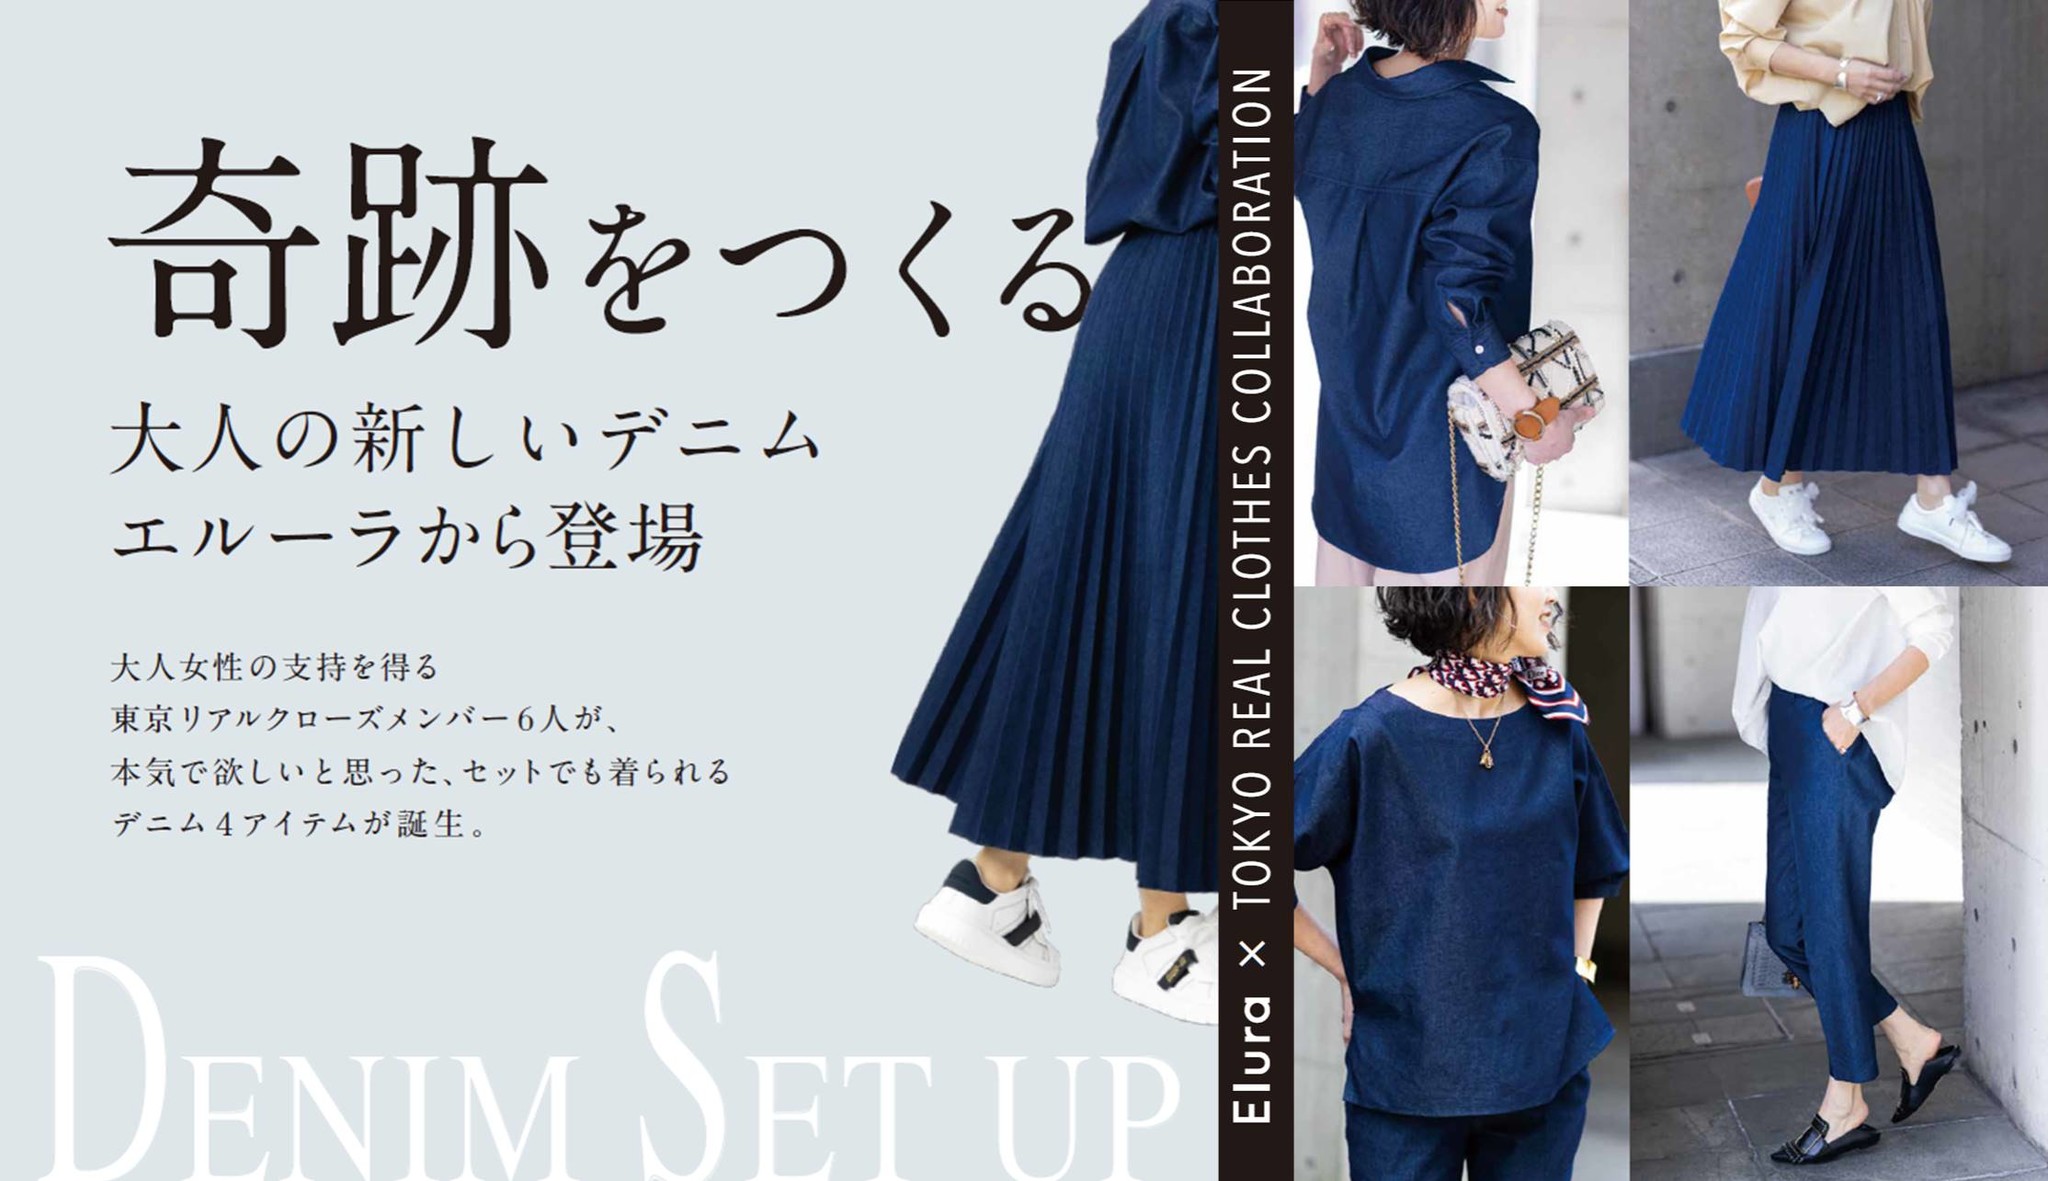 すとぷり1万円企画で莉犬くんが選んだ服セット